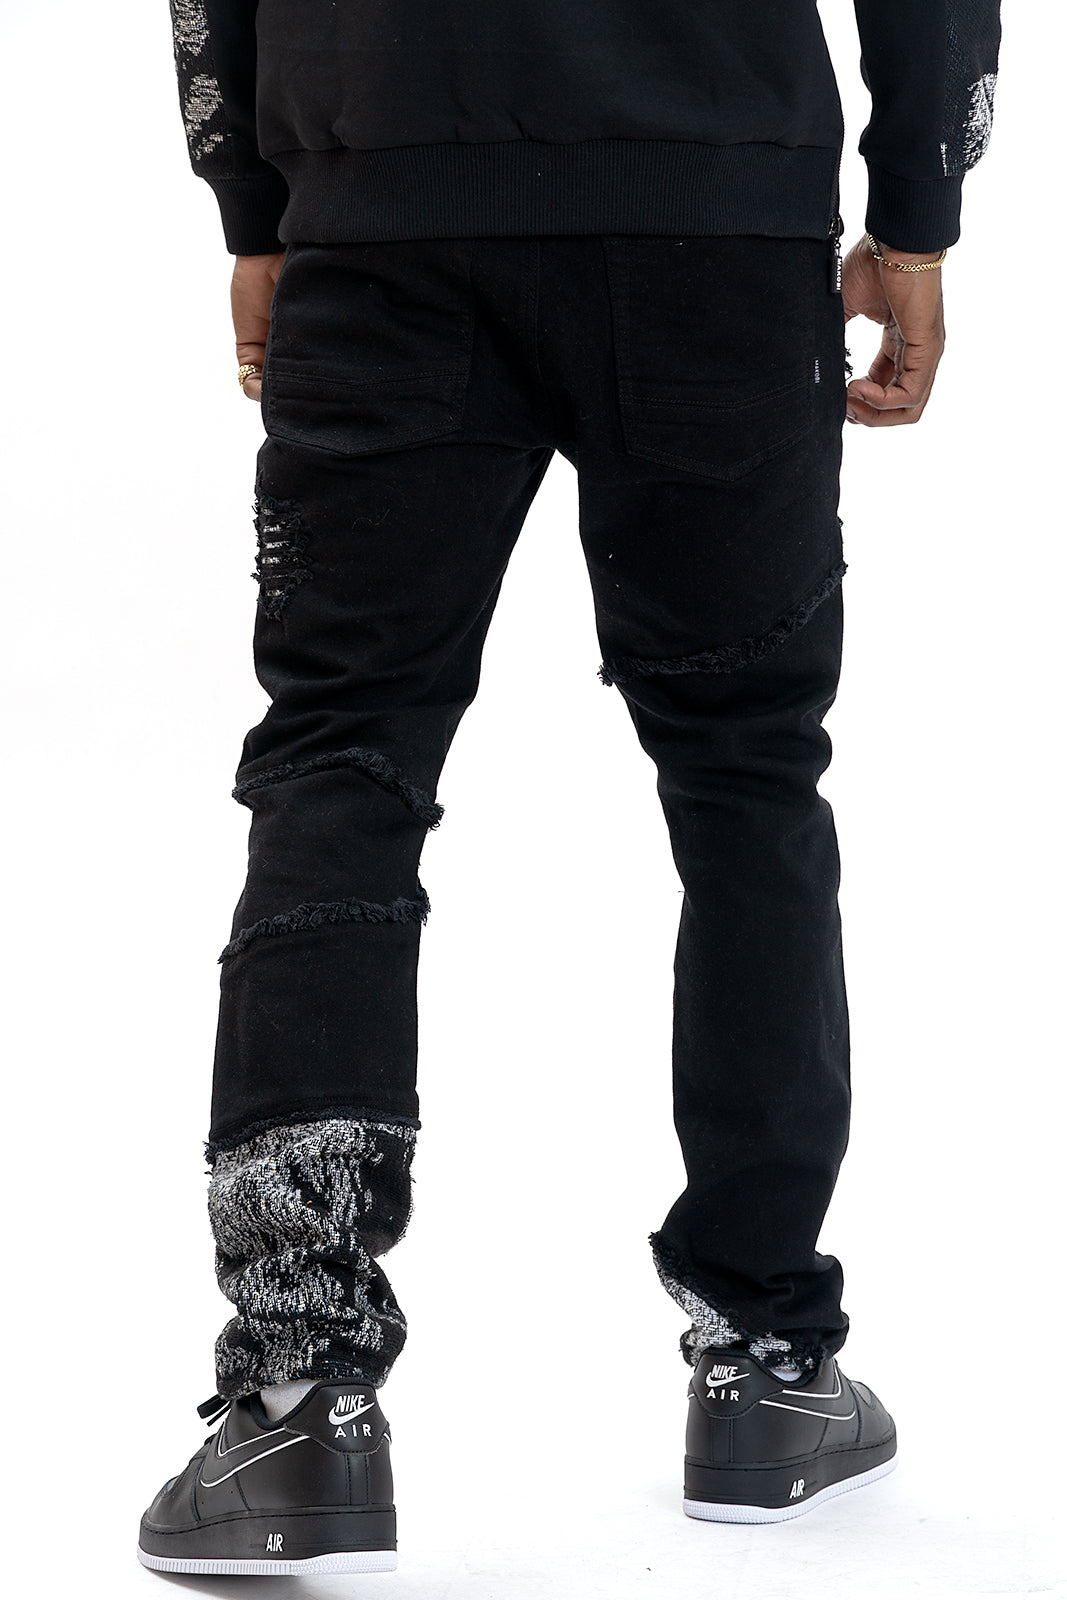 Makobi M1994 Bagnoli Tapestry Jeans - Black